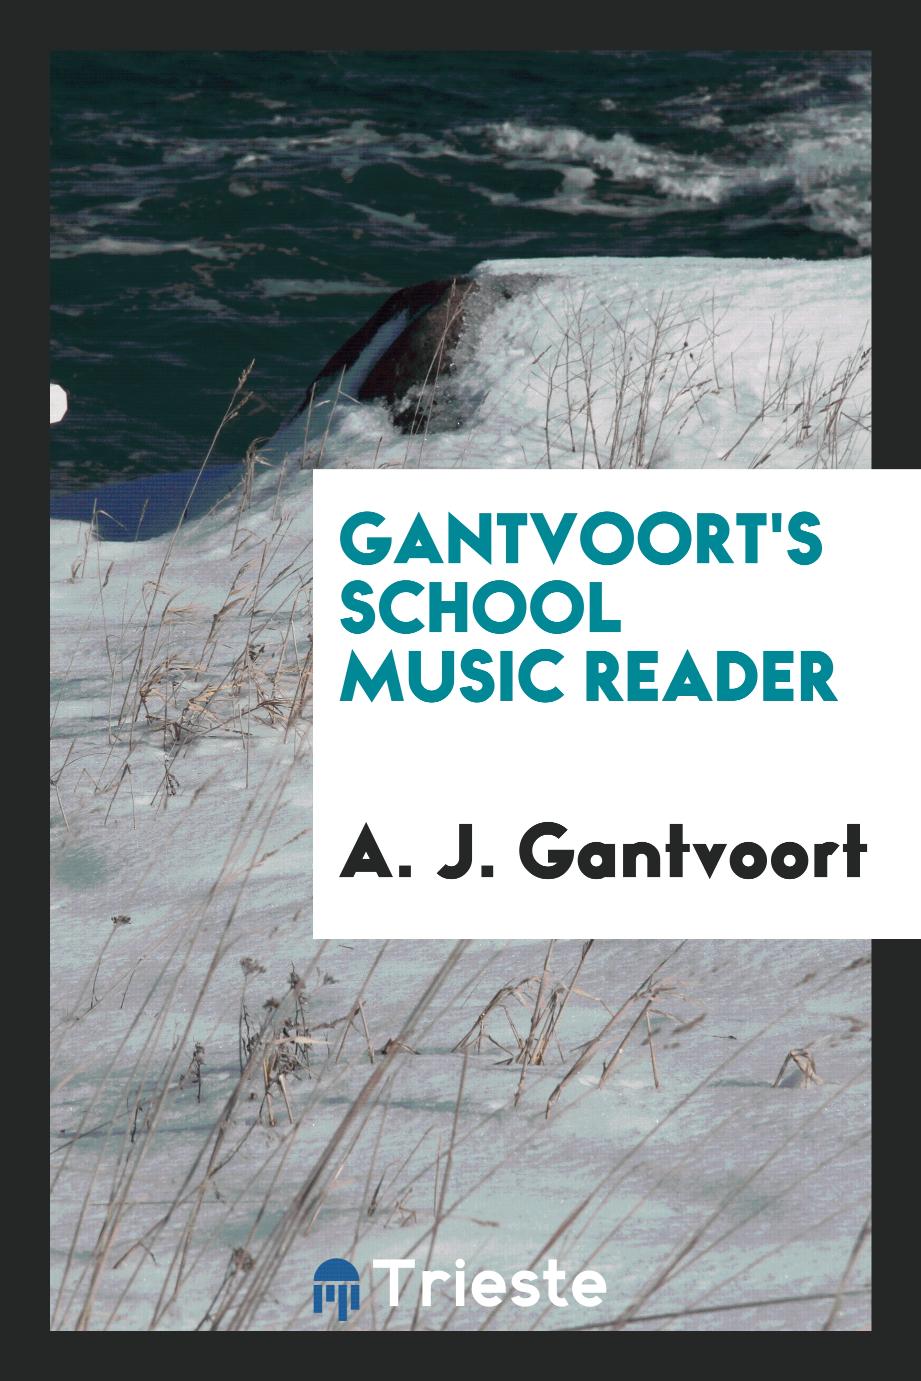 Gantvoort's School Music Reader